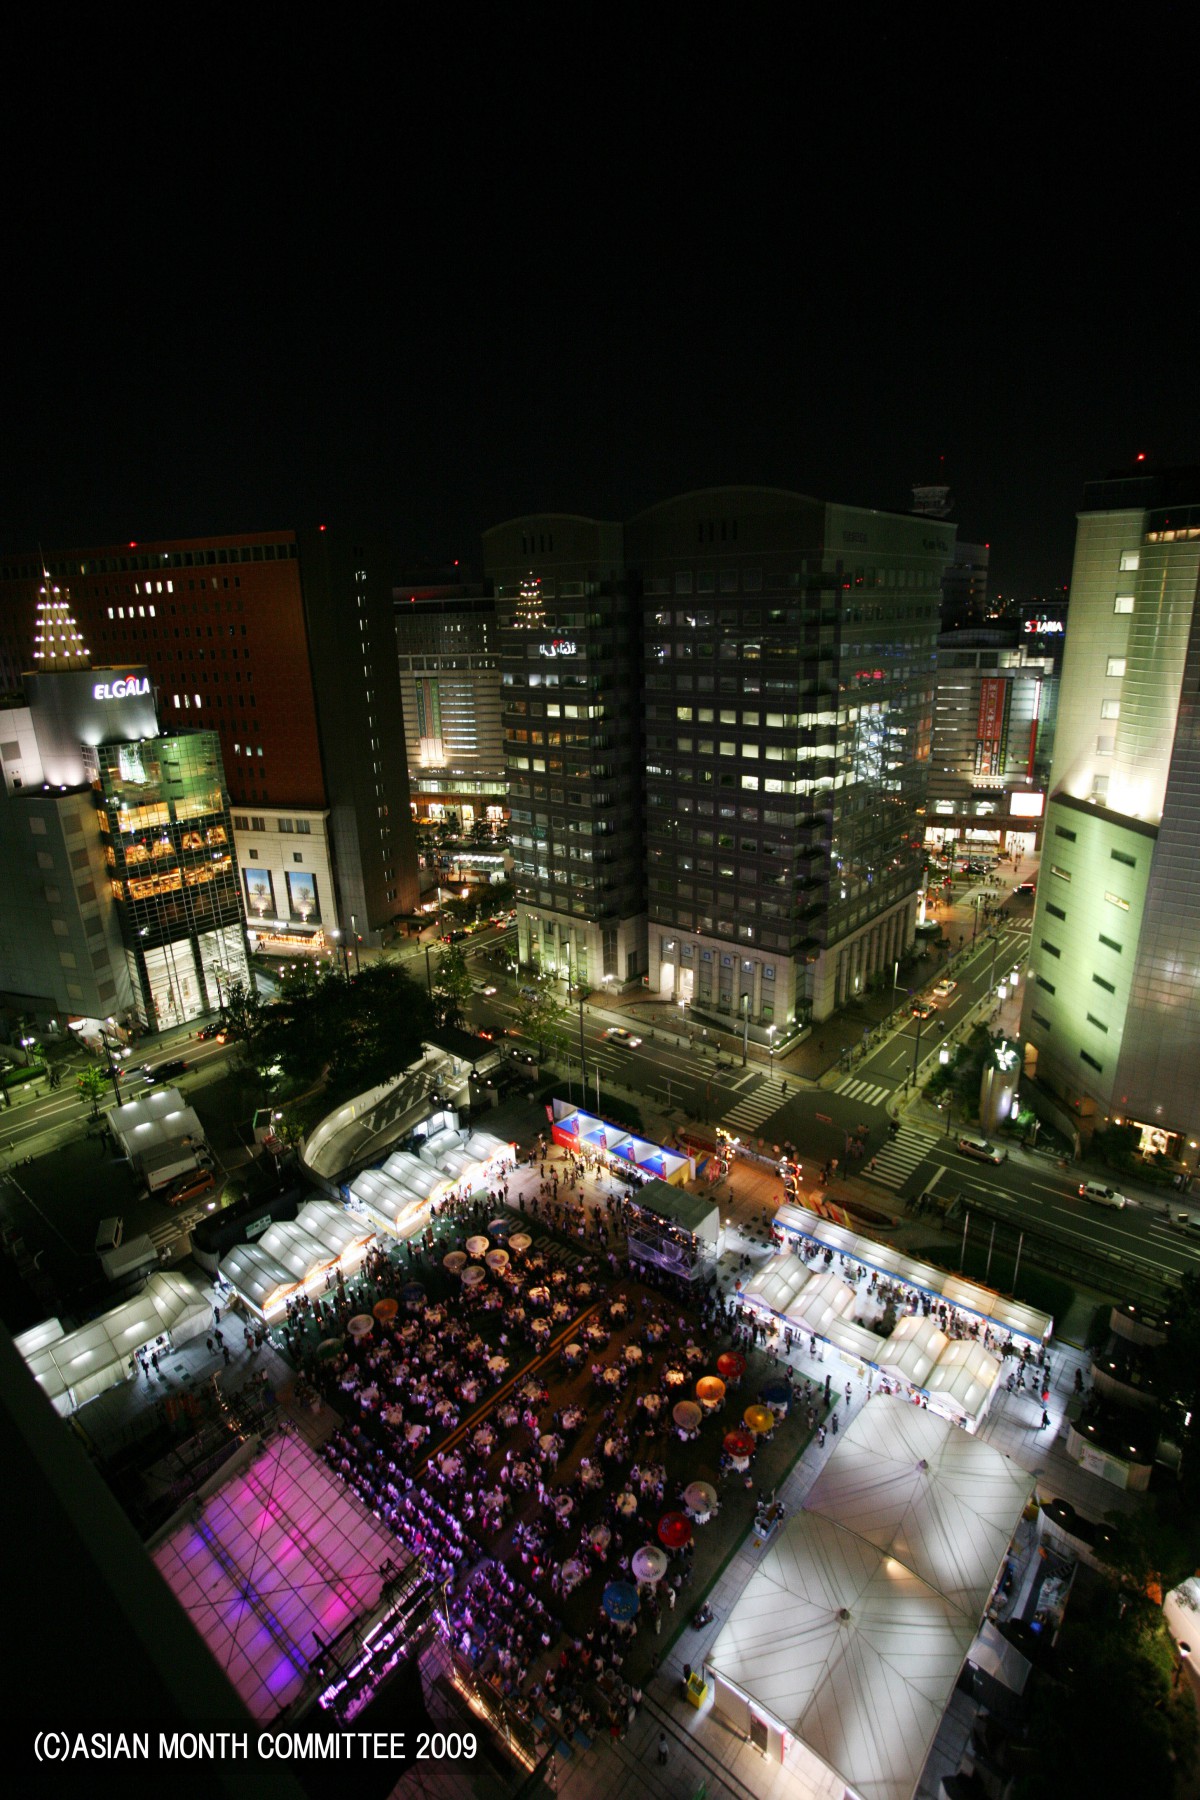 アジア太平洋フェスティバル会場(2008)の画像